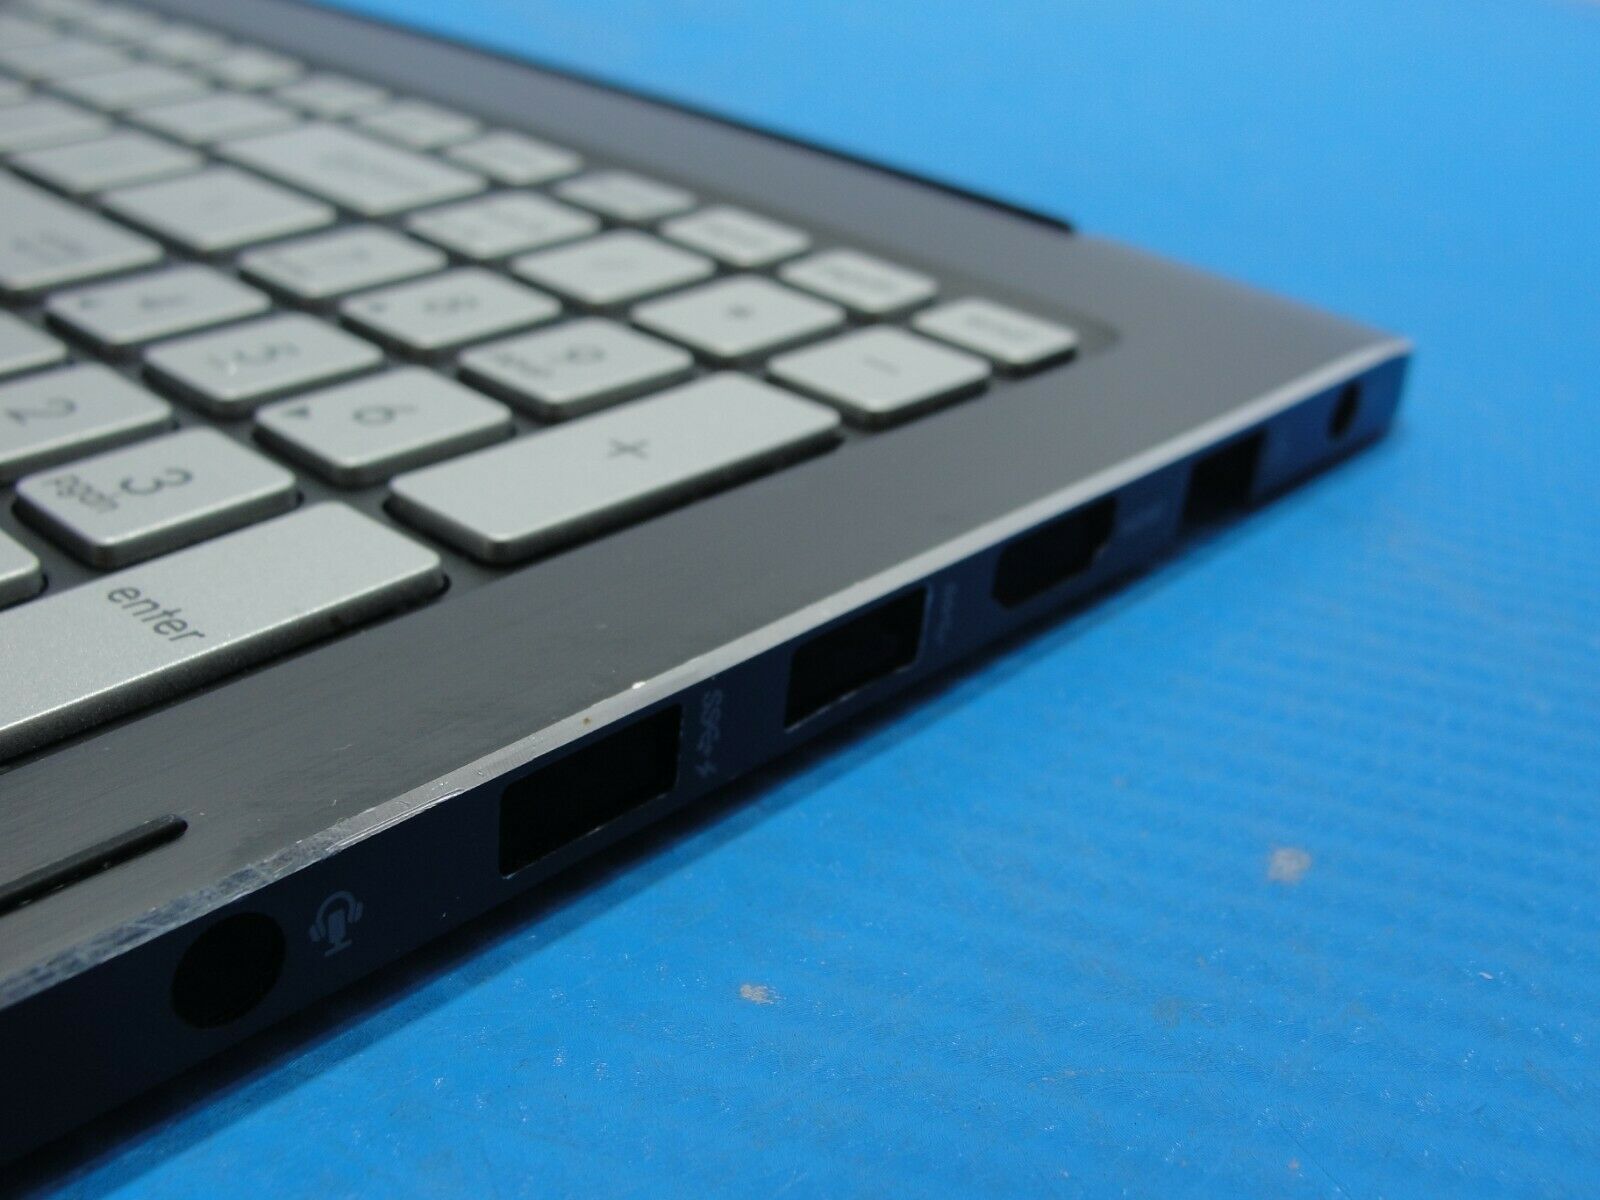 Asus Notebook Q502LA-BBI5T12 15.6